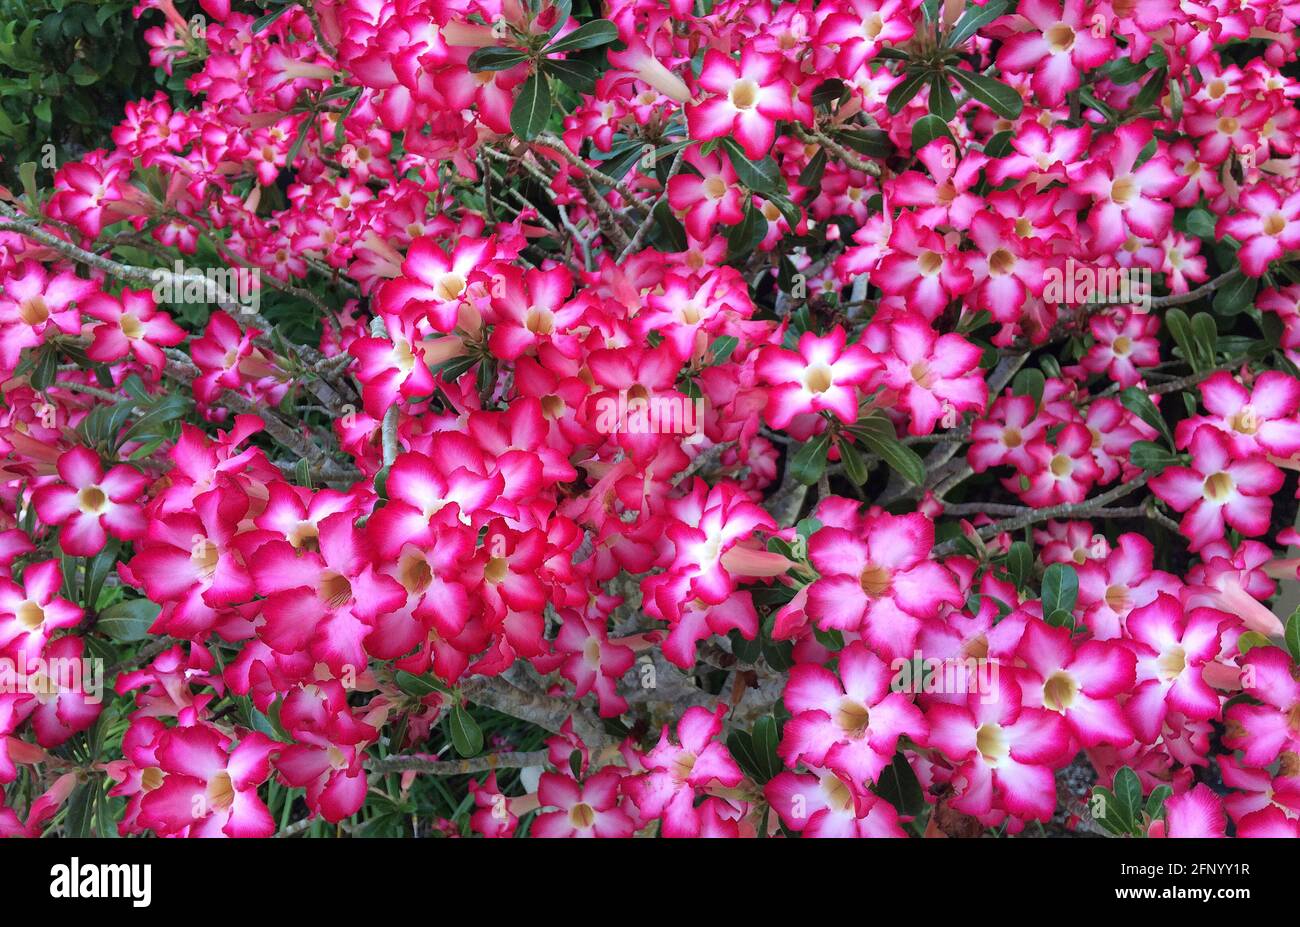 Eine Nahaufnahme der Wüstenrose, die ein gebräuchlicher Name für Adenium obesum ist, eine blühende Sukulente, die auch Sabi-Stern, Mock Azalea oder Impala Lilie genannt wird. Die aus Afrika stammende Pflanze ist eine beliebte Zierpflanze im Freien in wärmeren Klimazonen, wo Sonnenschein reichlich vorhanden ist, wie in Florida, USA, wo dieser 10 Jahre alte Strauch in einem kleinen Behälter wächst. Tiefes Pink und Rot sind die dominierenden Farben der schönen glockenförmigen Blüten der Pflanze mit 5 Blüten. Beachten Sie, dass milchsaft aus Wüstenrosenpflanzen giftig ist und für Menschen und Tiere als giftig gilt. Stockfoto